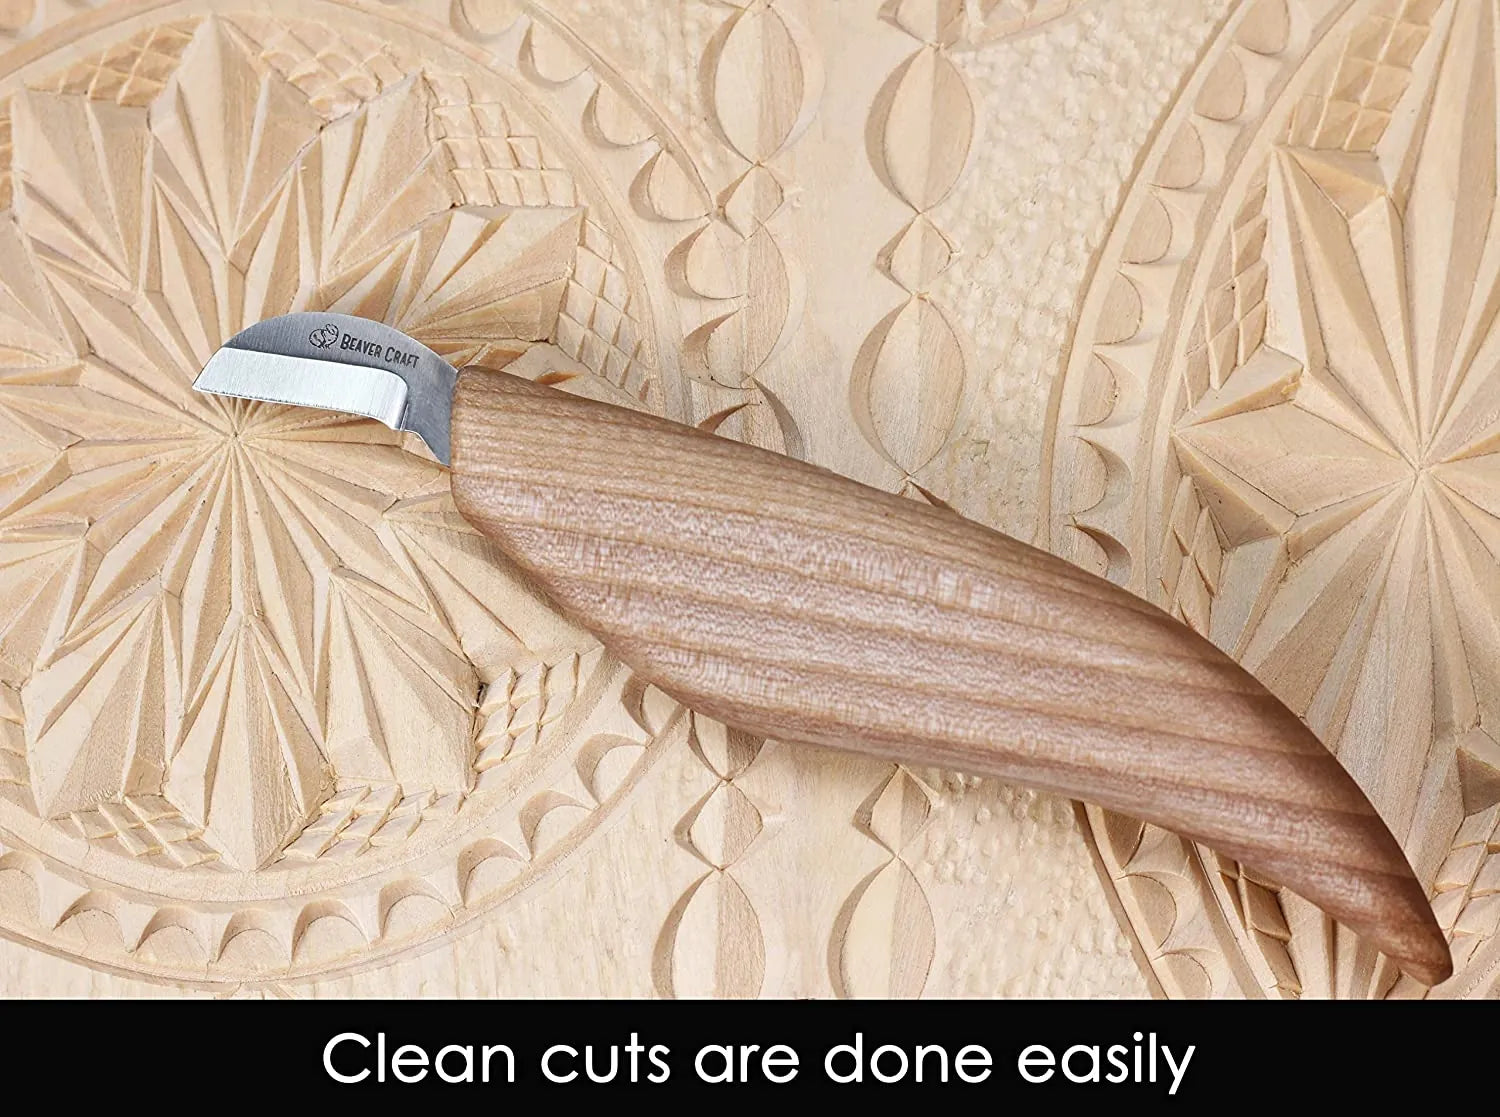 Chip Carving Knife Skew Knife Beveled Knife Wood Carving Knife Chip Carving  Woodcarving Knives Woodcarving Carving Knife Beavercraft C12 